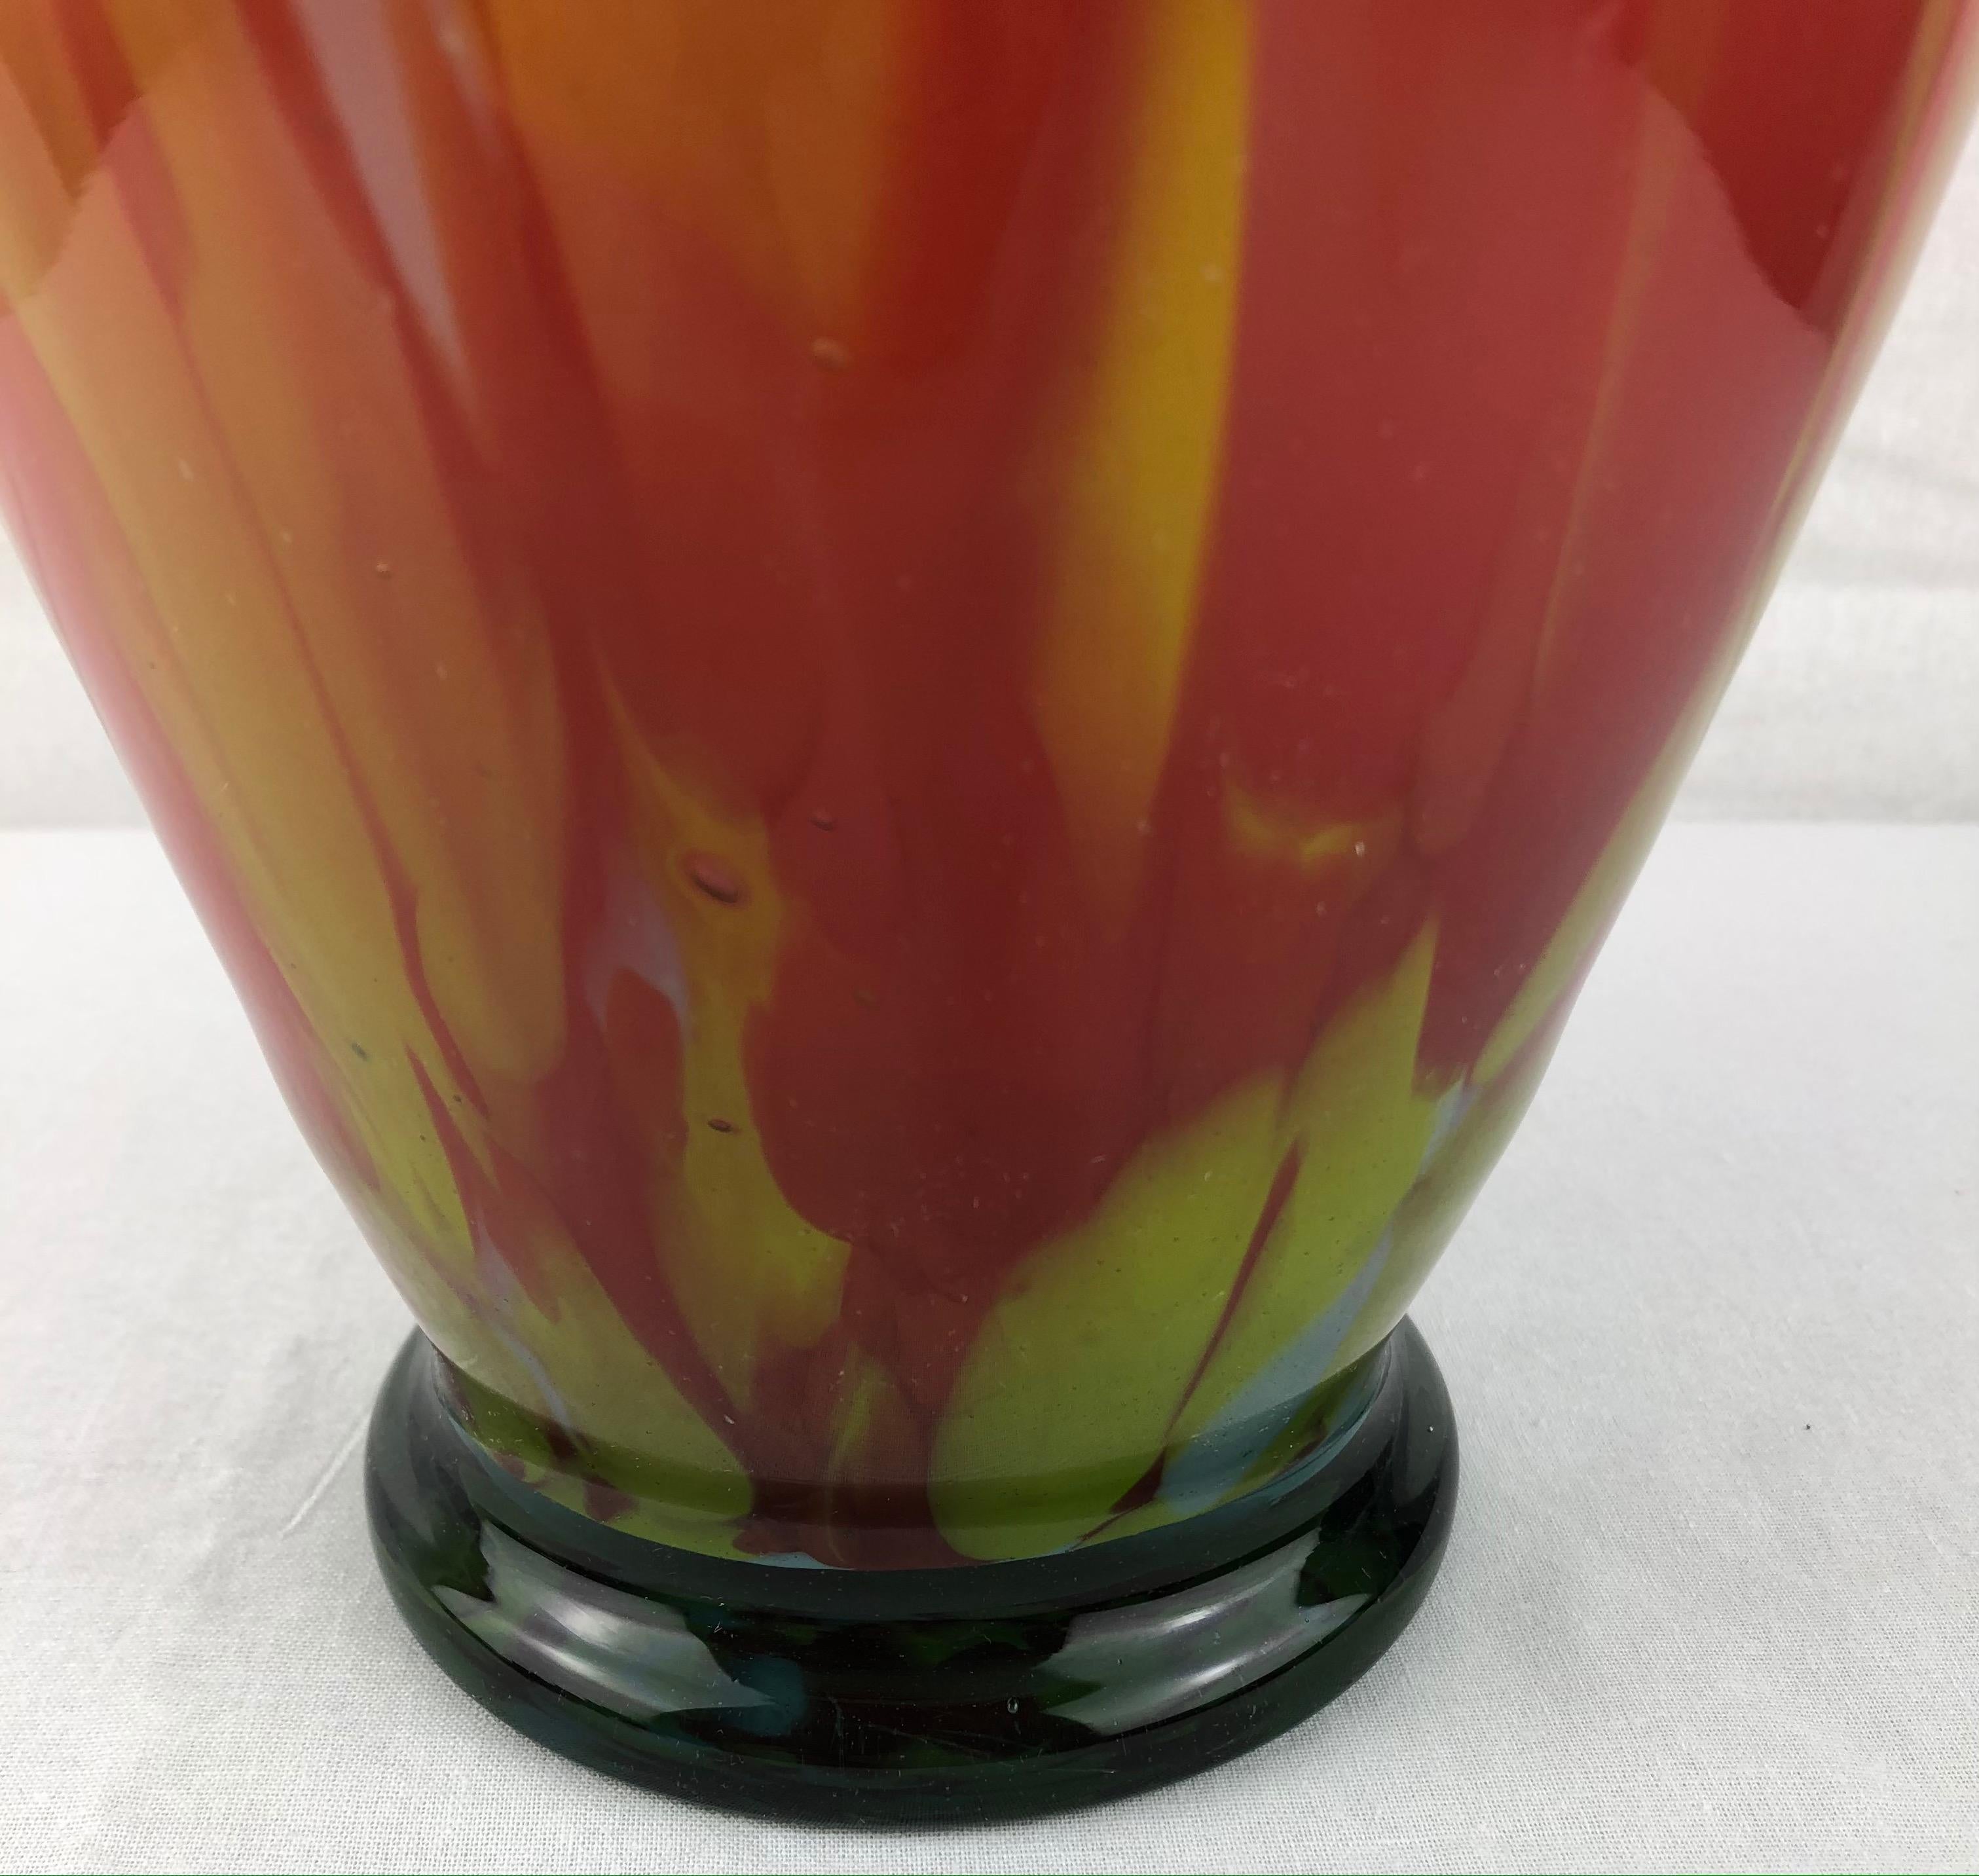 Cet éblouissant vase en cristal aux multiples couleurs réalisé par M.F. Cristal de Paris, France. 
Des couleurs étonnantes en parfait état. 

Il peut rehausser n'importe quelle étagère, table, crédence ou comptoir car il s'agit d'un objet